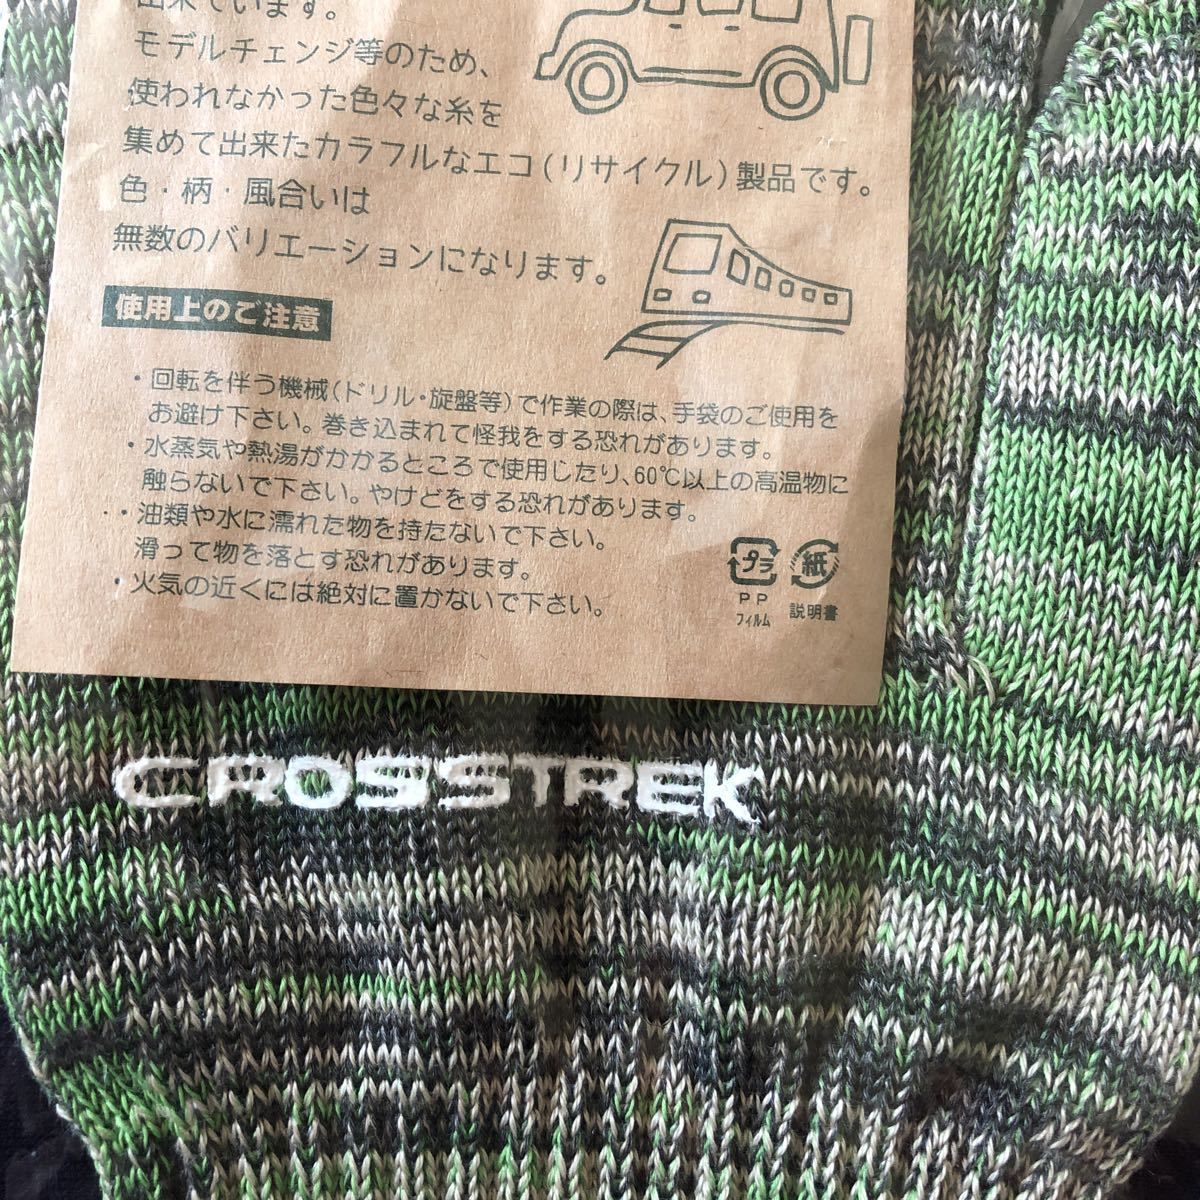  редкость не продается SUBARU Subaru CROSSTREK eko перчатки армия рука MIX цвет Novelty 